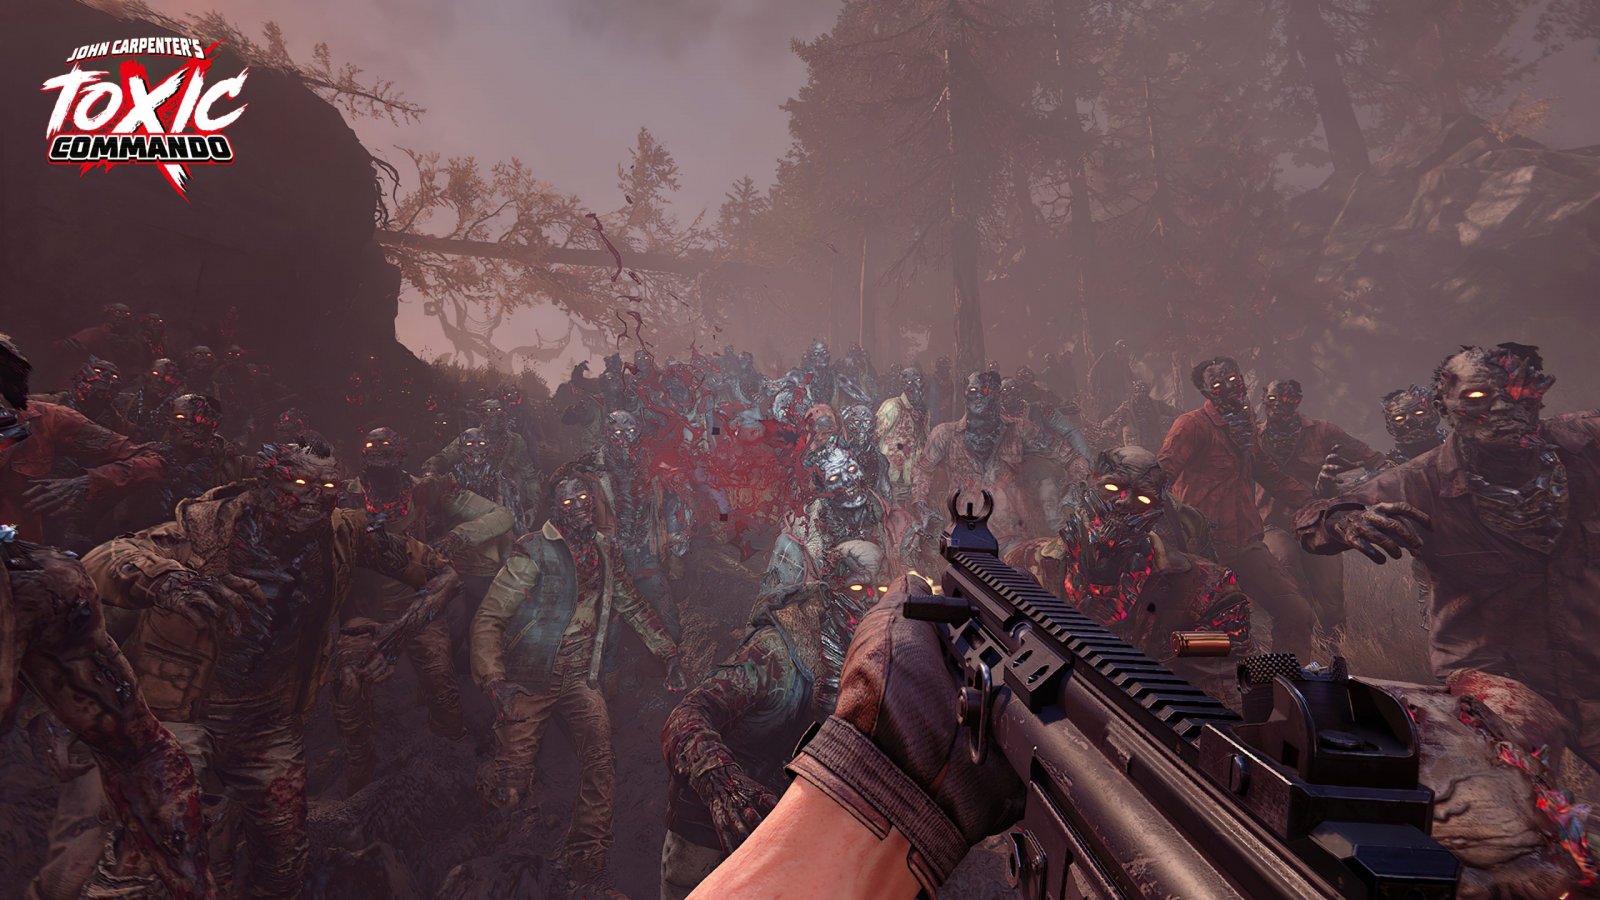 John Carpenter's Toxic Commando annunciato con un gameplay trailer al Summer Game Fest